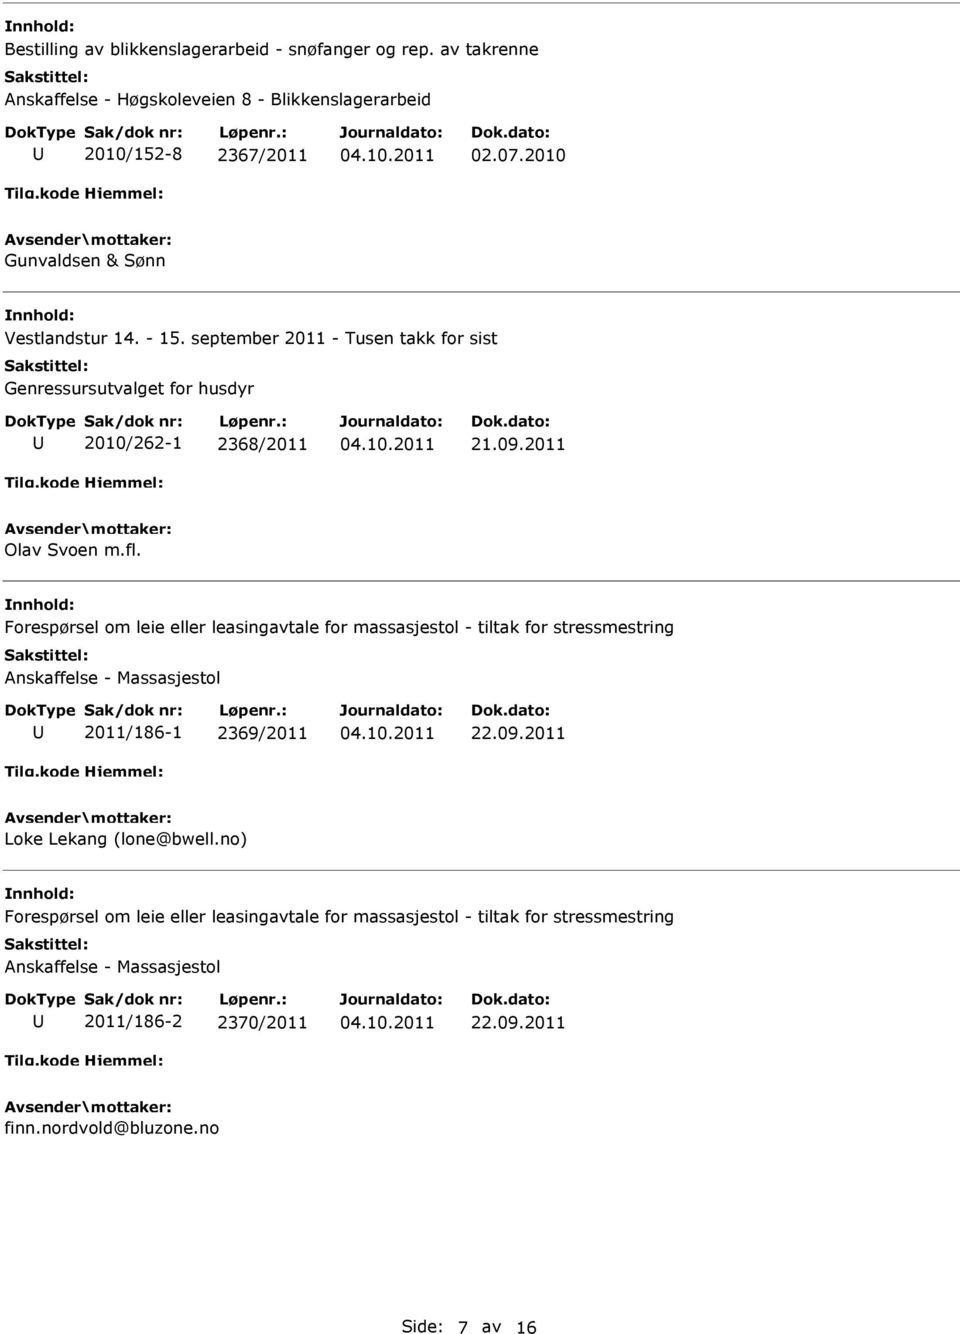 Forespørsel om leie eller leasingavtale for massasjestol - tiltak for stressmestring Anskaffelse - Massasjestol 2011/186-1 2369/2011 22.09.